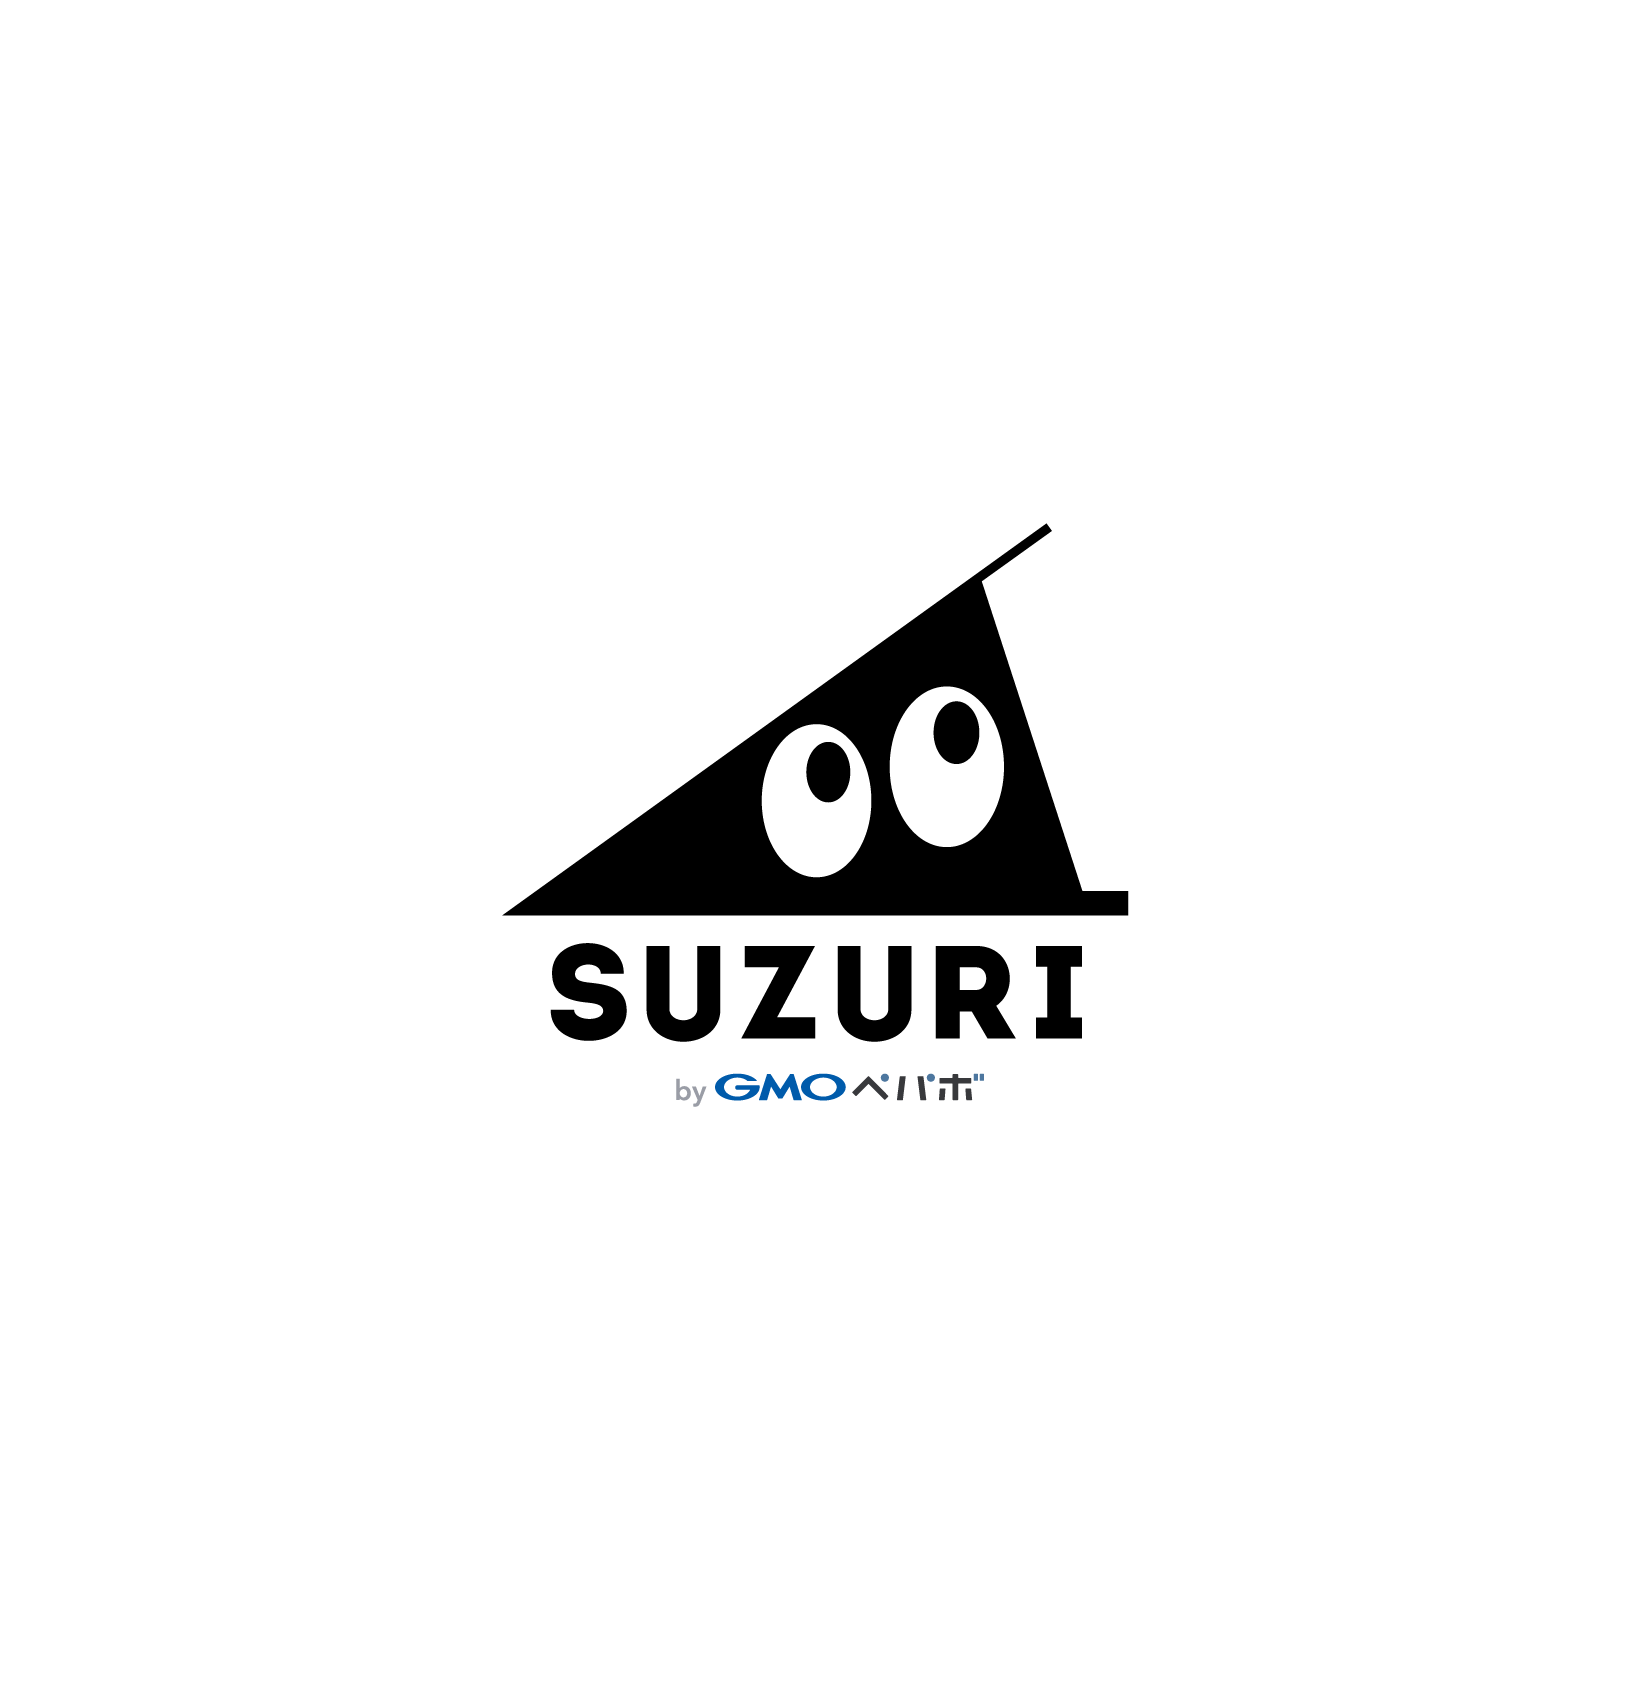 オリジナルグッズ作成・販売サービス「SUZURI」 by GMOペパボ株式会社